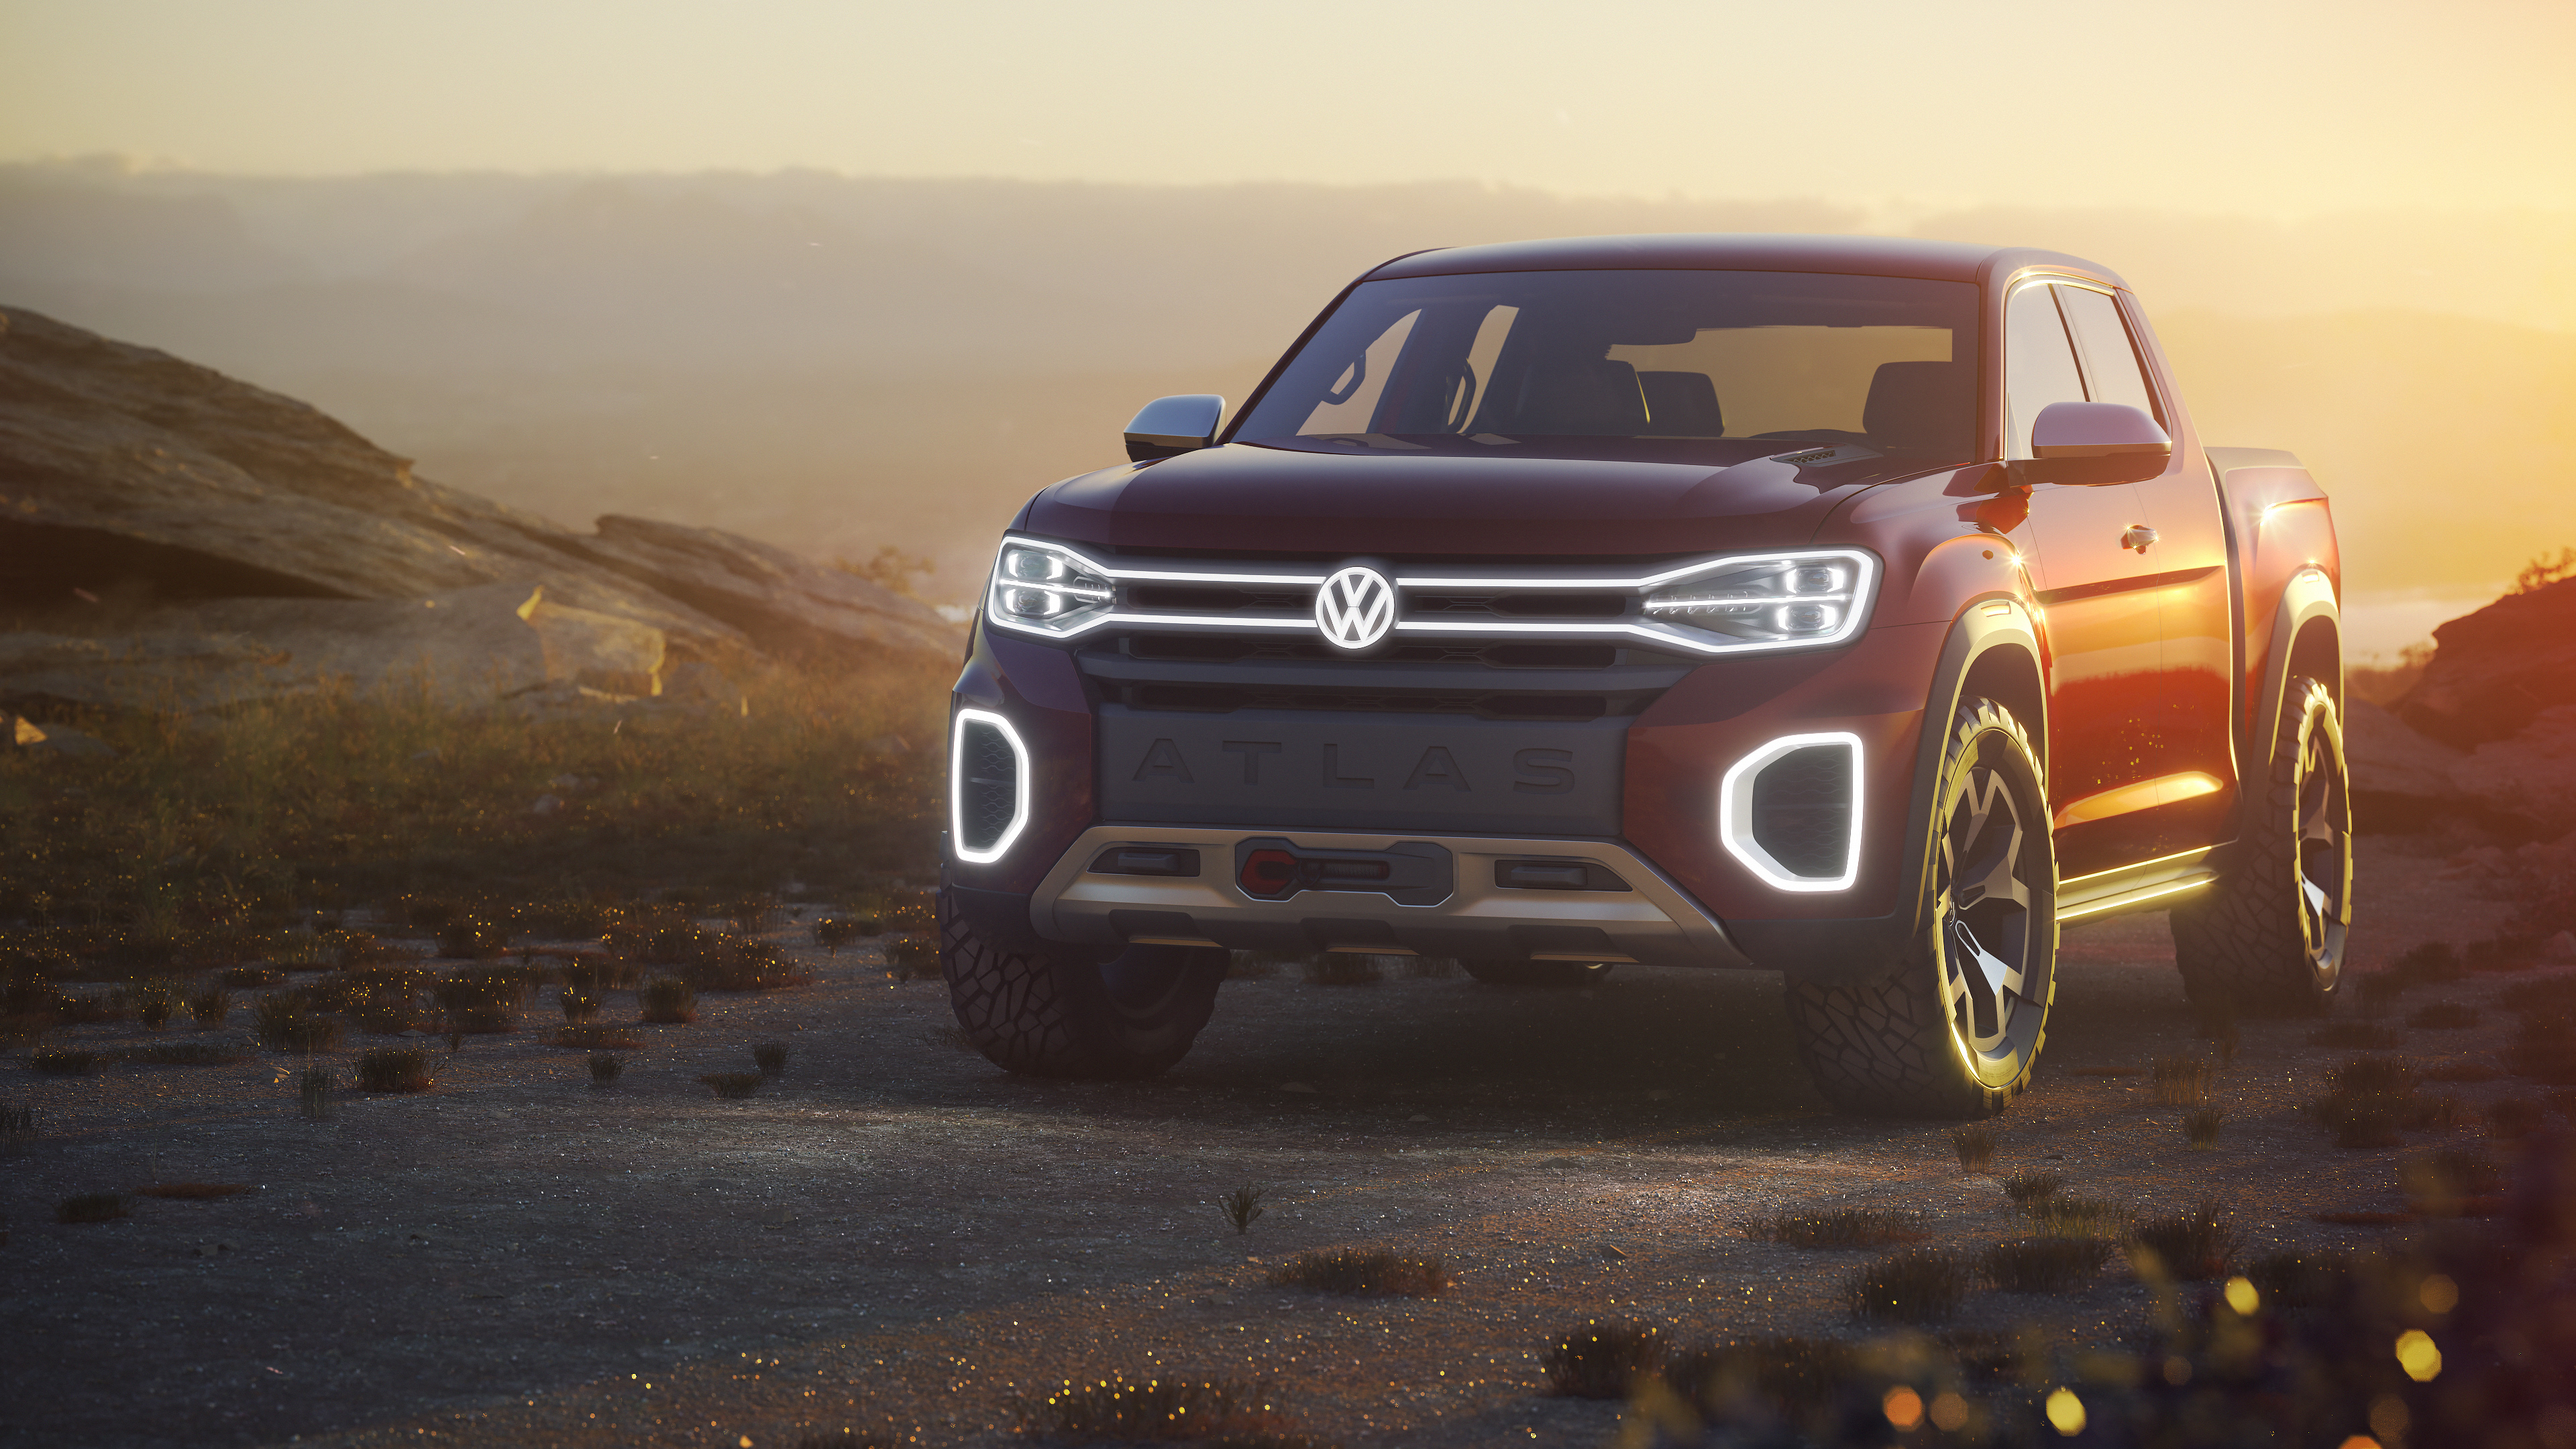 2018 Volkswagen Atlas Tanoak Pickup Truck Concept 4K